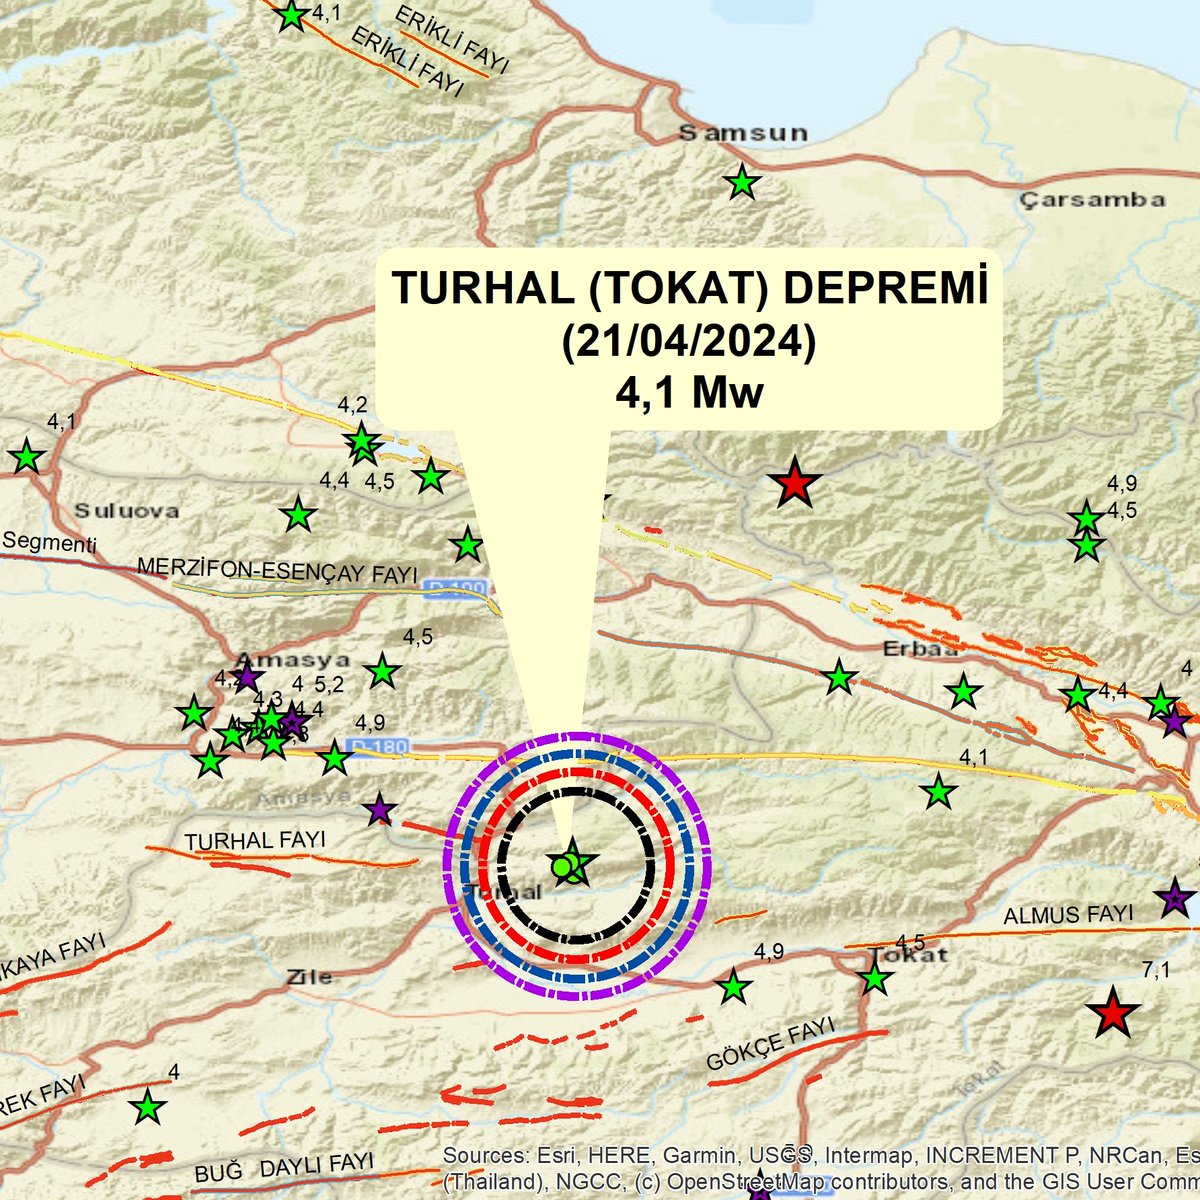 #Tokat ili #Turhal ilçesinde Turhal Fayının doğu ucunda bağımsız bir #deprem olmuştur. Bu bölgede #Almus Fayının güneyinde 7,1 ve KAF üzerinde Tokat (#Erbaa) da 7,0 Mw  büyüklüğündeki depremde 3 bin kişi ölmüştür. Turhal Fayında 7 ve üzeri deprem beklentisi yoktur.